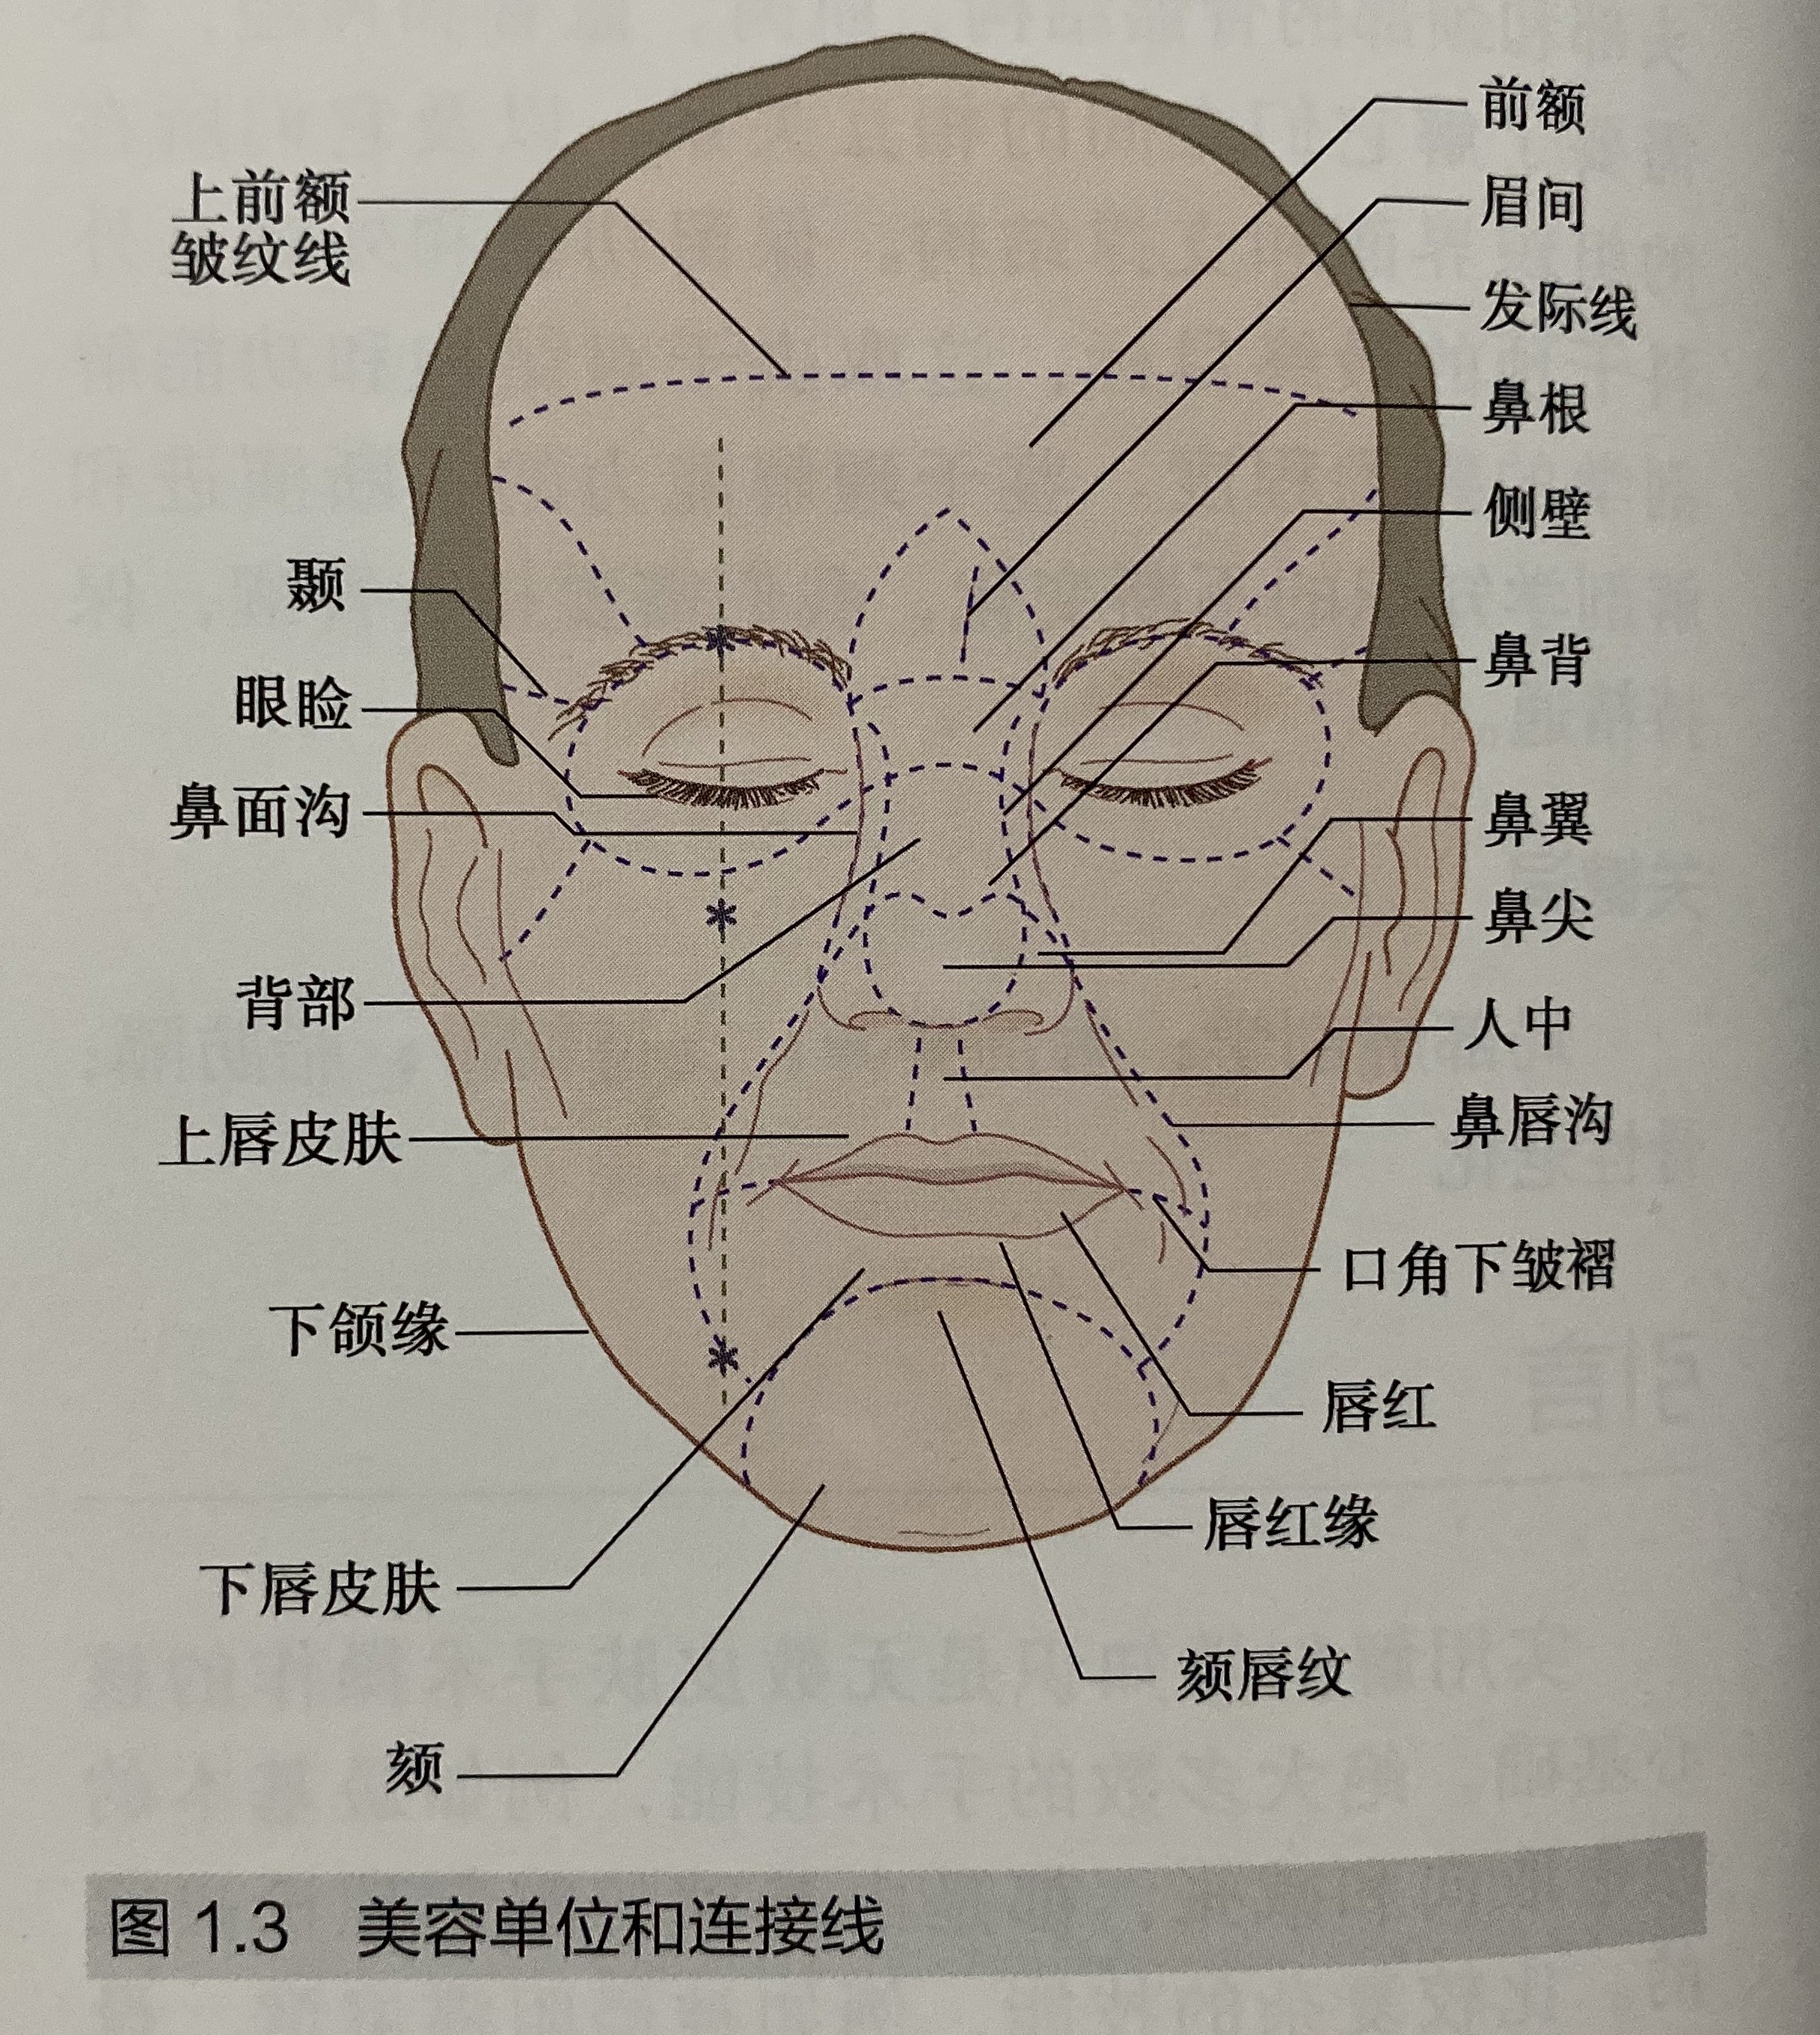 面部手术切口设计原则